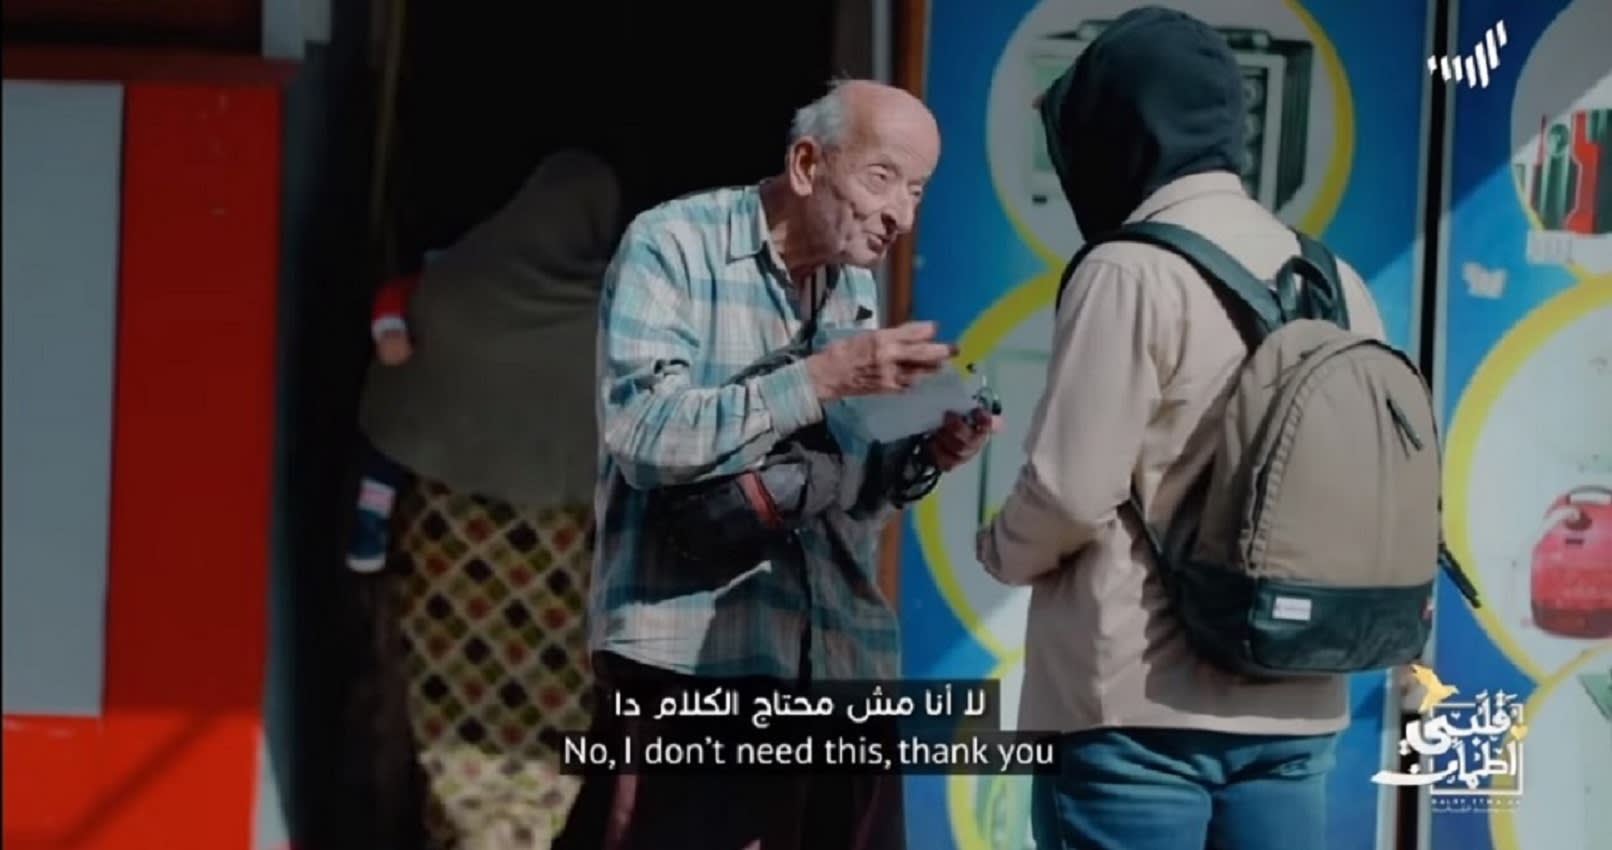 "طبيب الغلابة" المصري حديث الشبكات الاجتماعية بعد رفضه مساعدة برنامج "قلبي اطمأن"